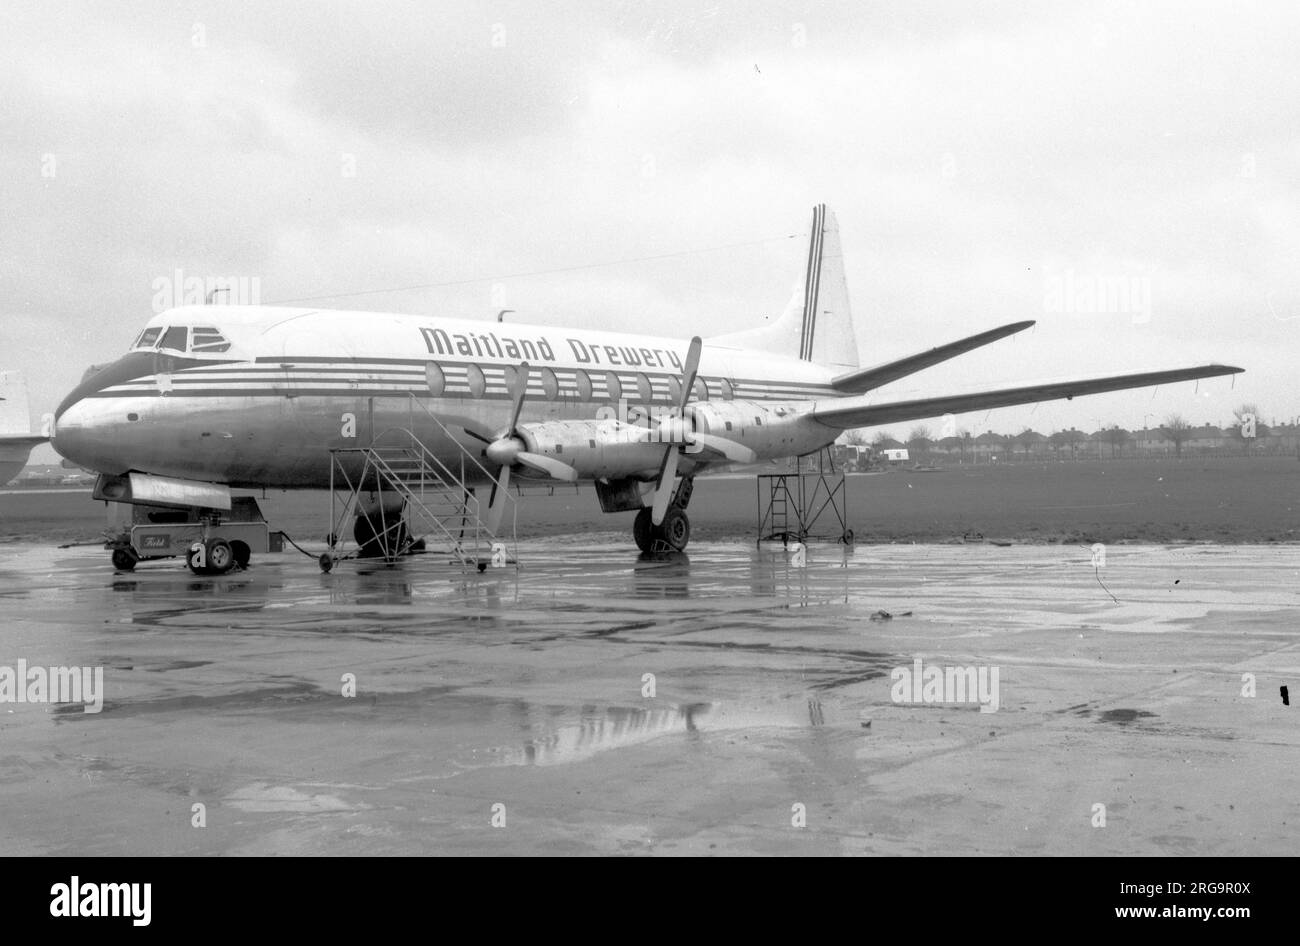 Vickers Viscount 708 G-ARER (msn 012) der Maitland Drewery Aviation am Flughafen Southend. Registrierungsverlauf: Erster Flug am 3. Juli 1953. 53/9/23:geliefert an Air France als F-BGNM 60/9: Maitland Drewery Aviation AS G-ARER 61/5/29 - 61/11/2: BKS Air Transport beendete seine Tage mit Air Inter in Frankreich als F-BEOA ab Juni 1966 und wurde in Clermont Ferrand, Frankreich, zum Start mit simuliertem Triebwerkausfall abgeschrieben. Das Flugzeug ist von der Start- und Landebahn geschwungen und wurde irreparabel beschädigt. Stockfoto